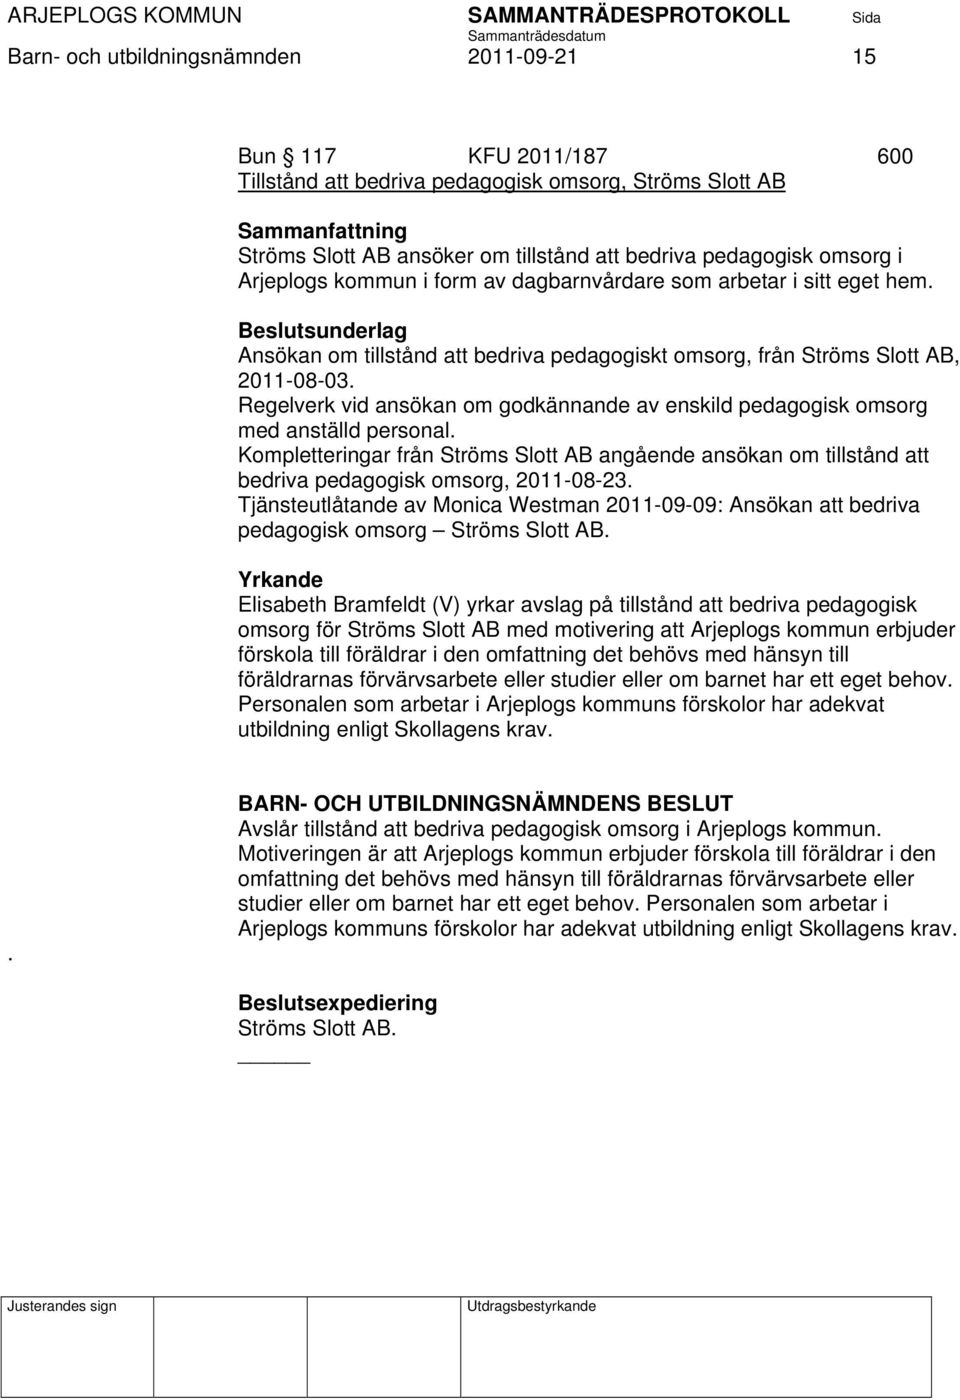 Regelverk vid ansökan om godkännande av enskild pedagogisk omsorg med anställd personal. Kompletteringar från Ströms Slott AB angående ansökan om tillstånd att bedriva pedagogisk omsorg, 2011-08-23.